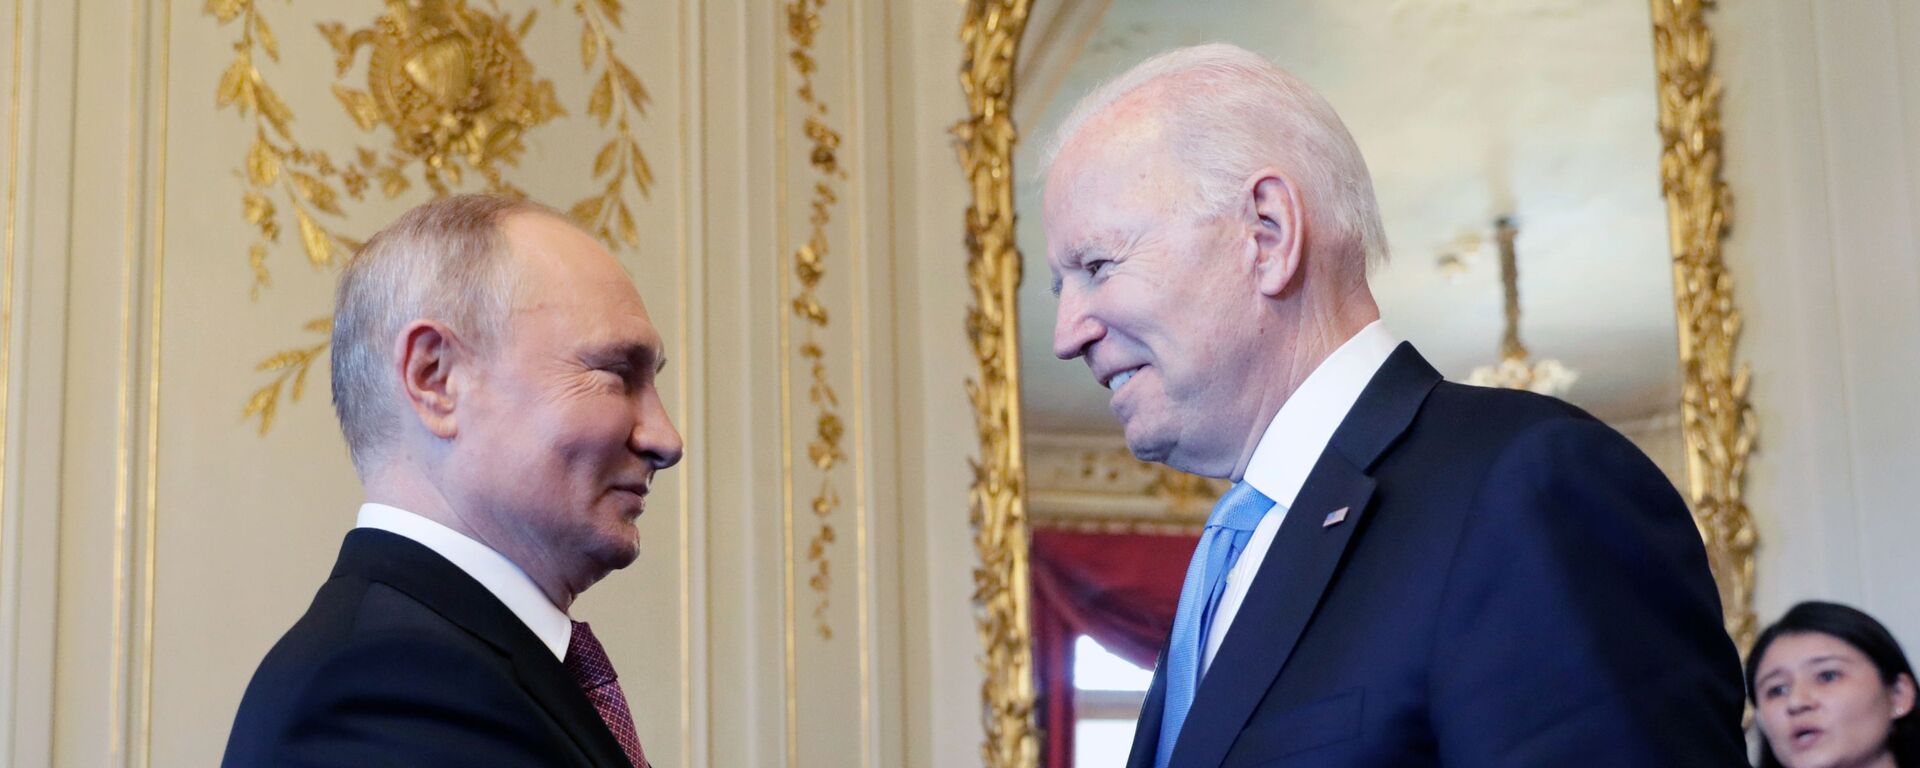 Cuộc gặp đầu tiên giữa hai vị Tổng thống Putin và Biden tại Geneva. - Sputnik Việt Nam, 1920, 17.06.2021